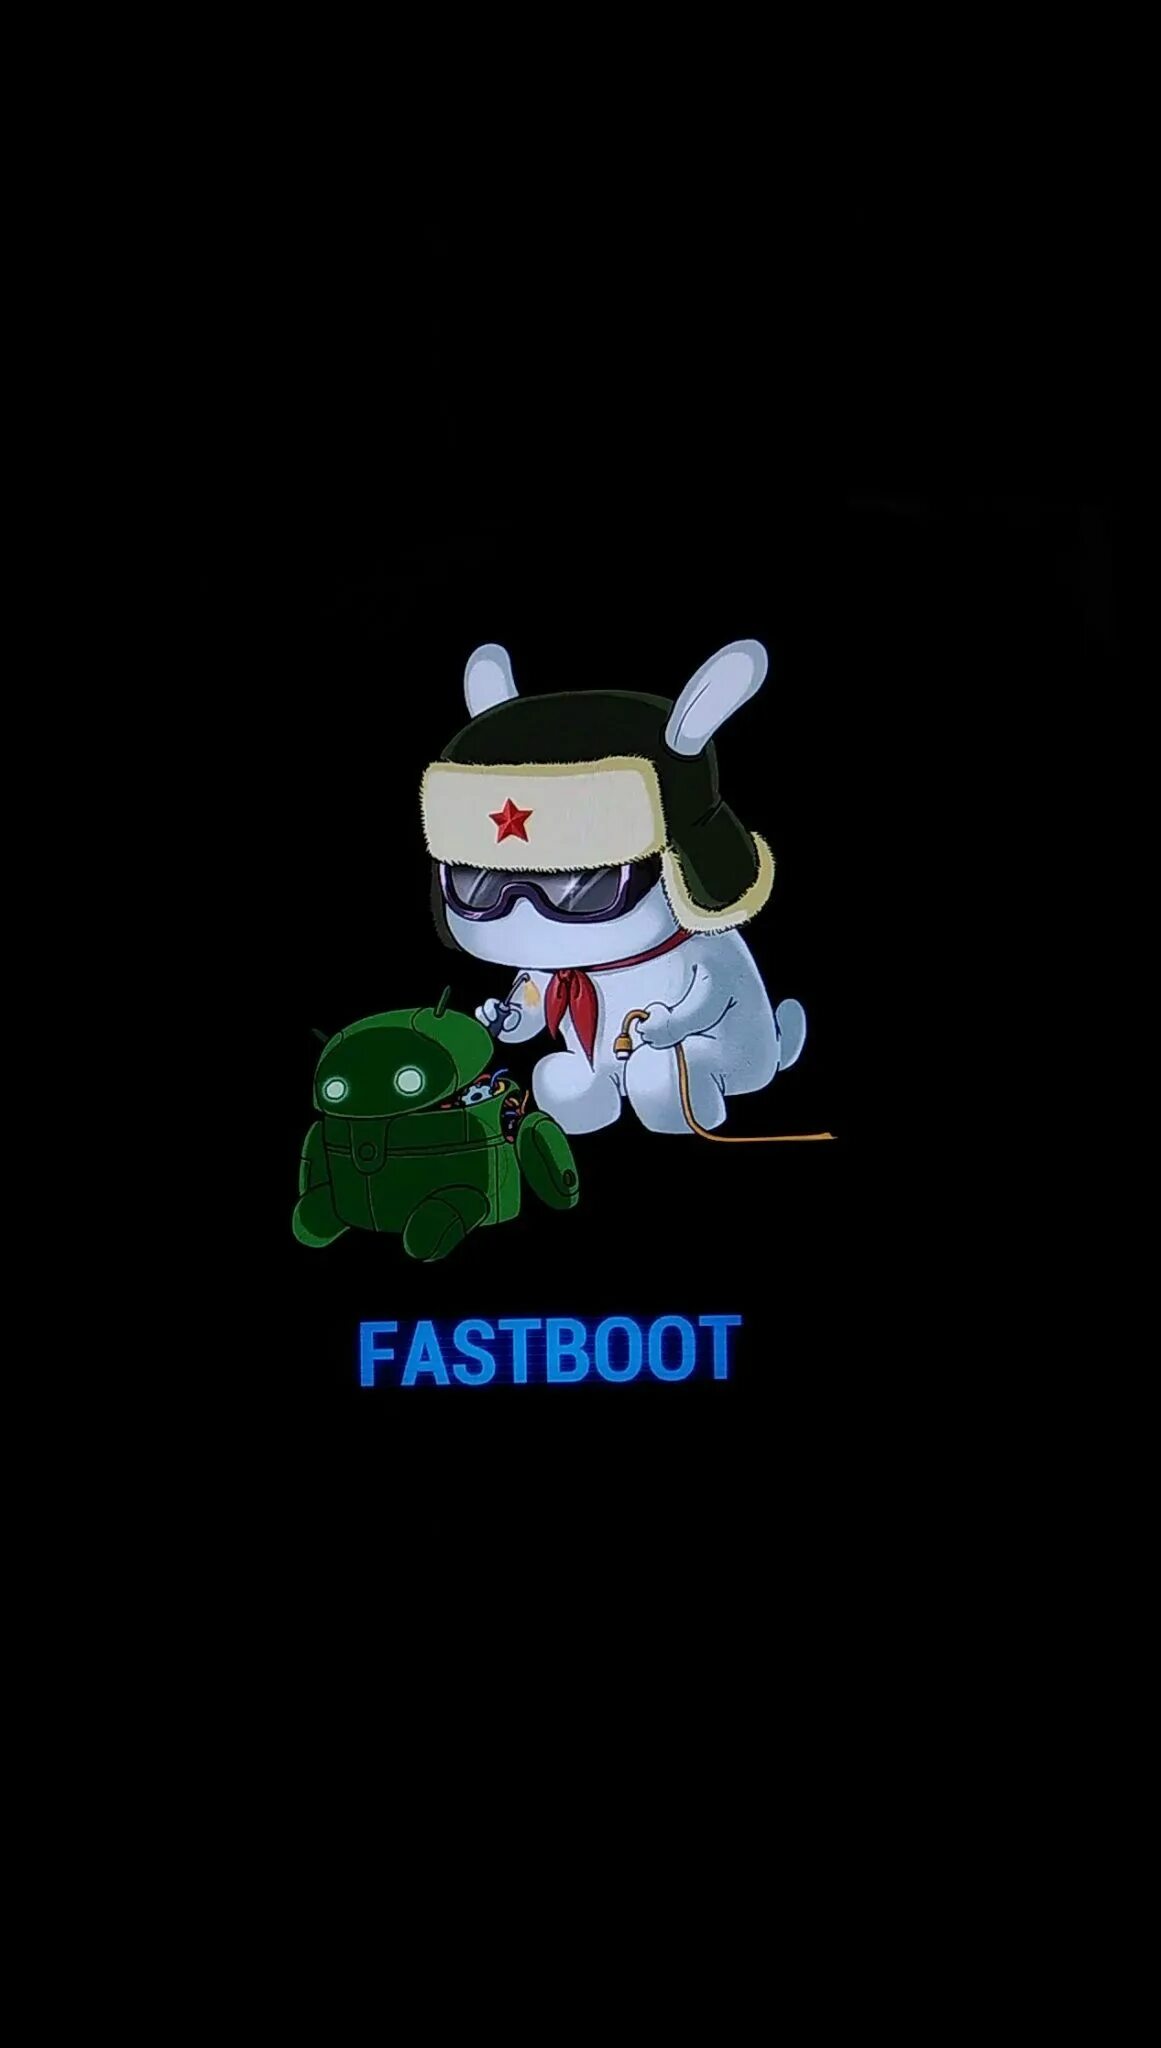 Xiaomi заяц Fastboot. Заяц андроид Fastboot. Xiaomi заяц в ушанке Fastboot. Талисман Xiaomi Fastboot. Fastboot redmi что делать